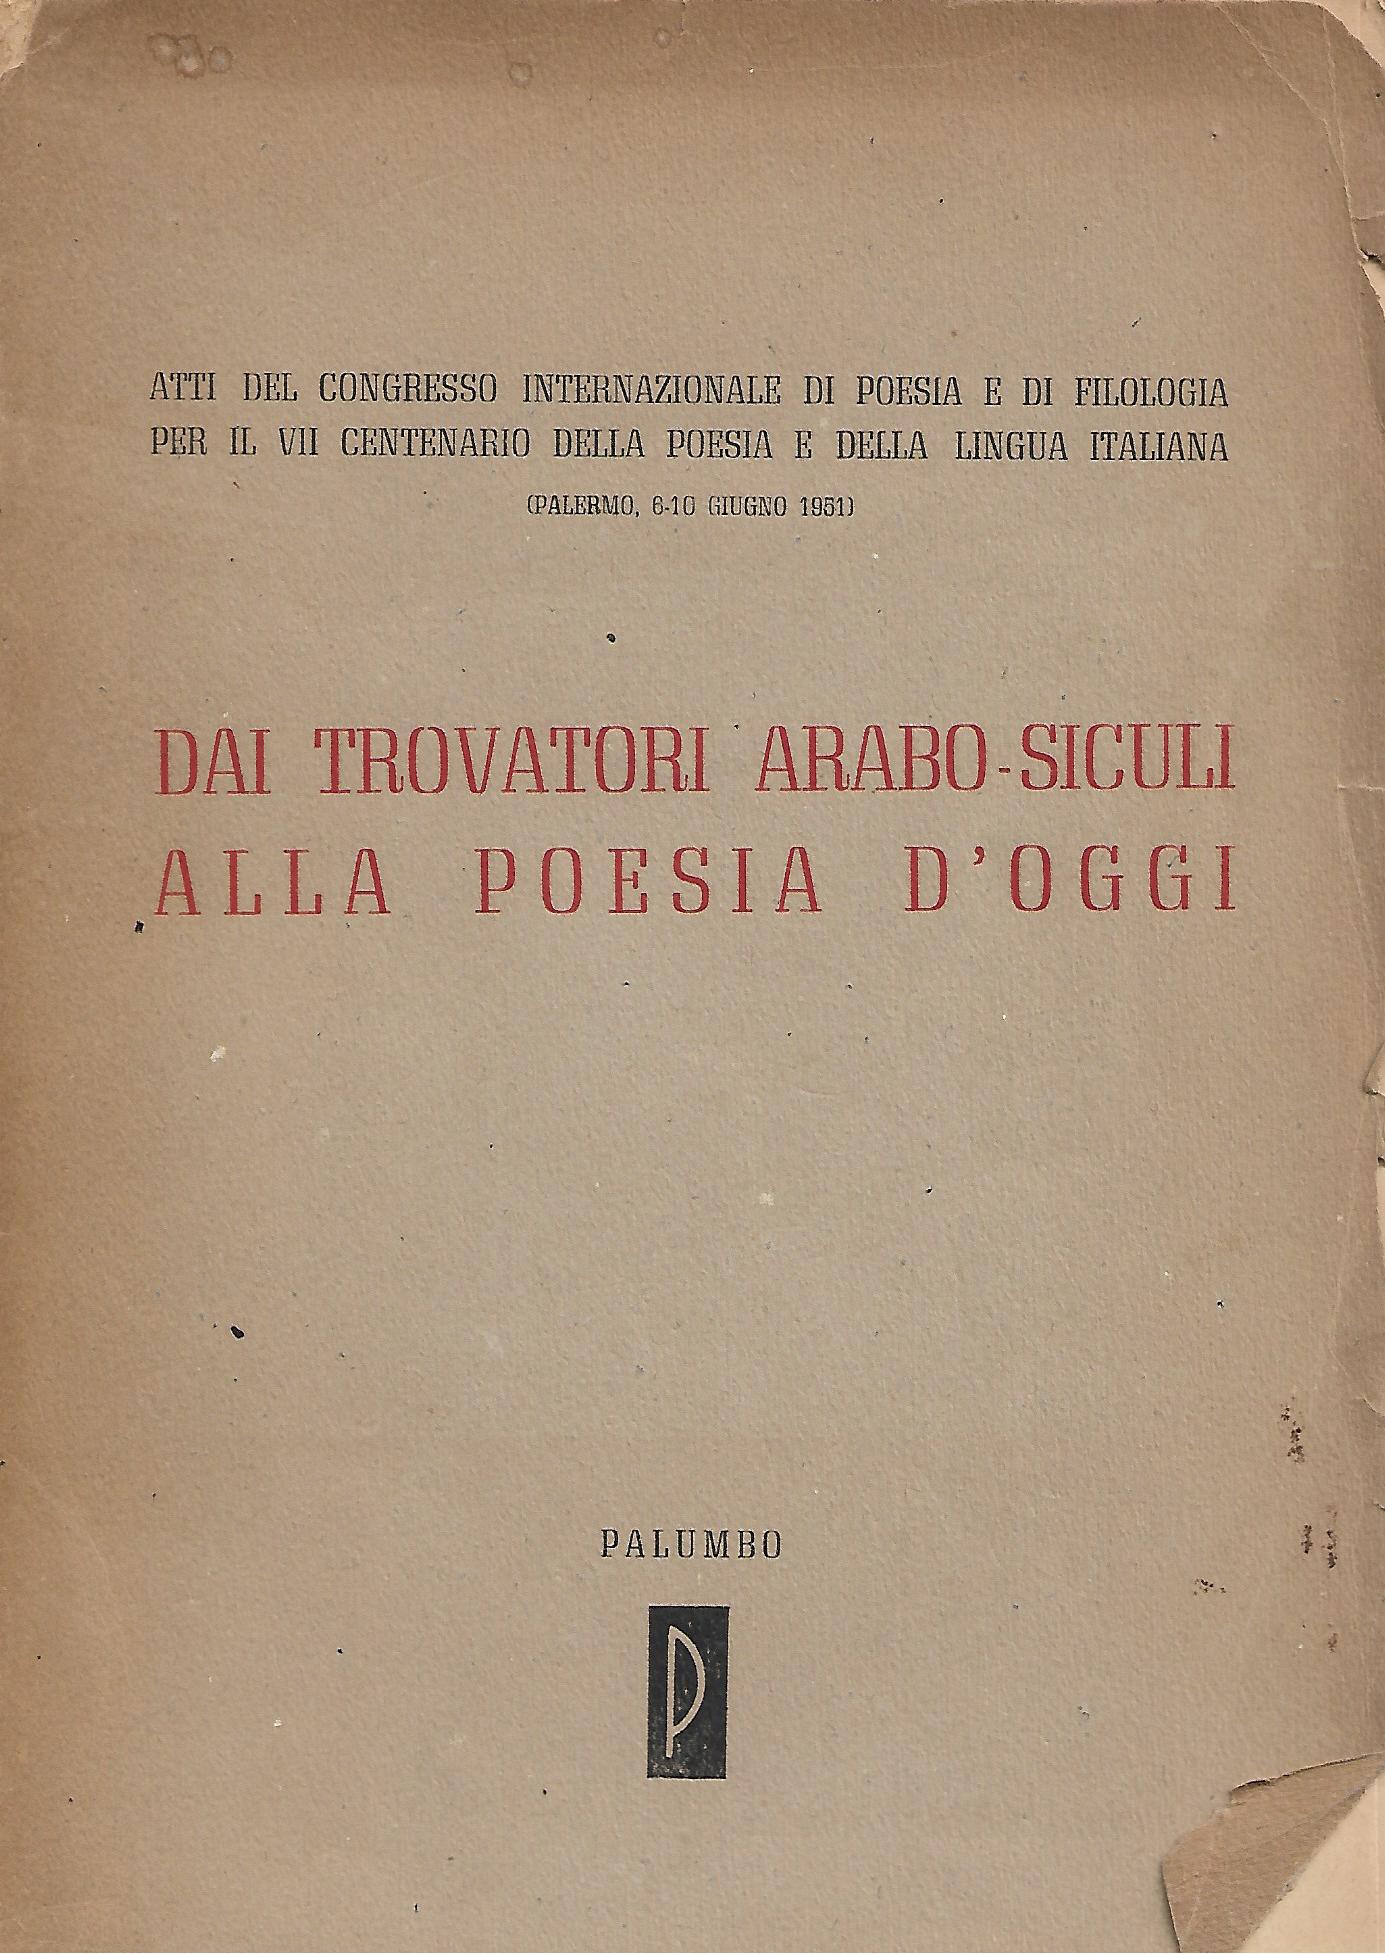 Vialibri Rare Books From 1953 Page 82